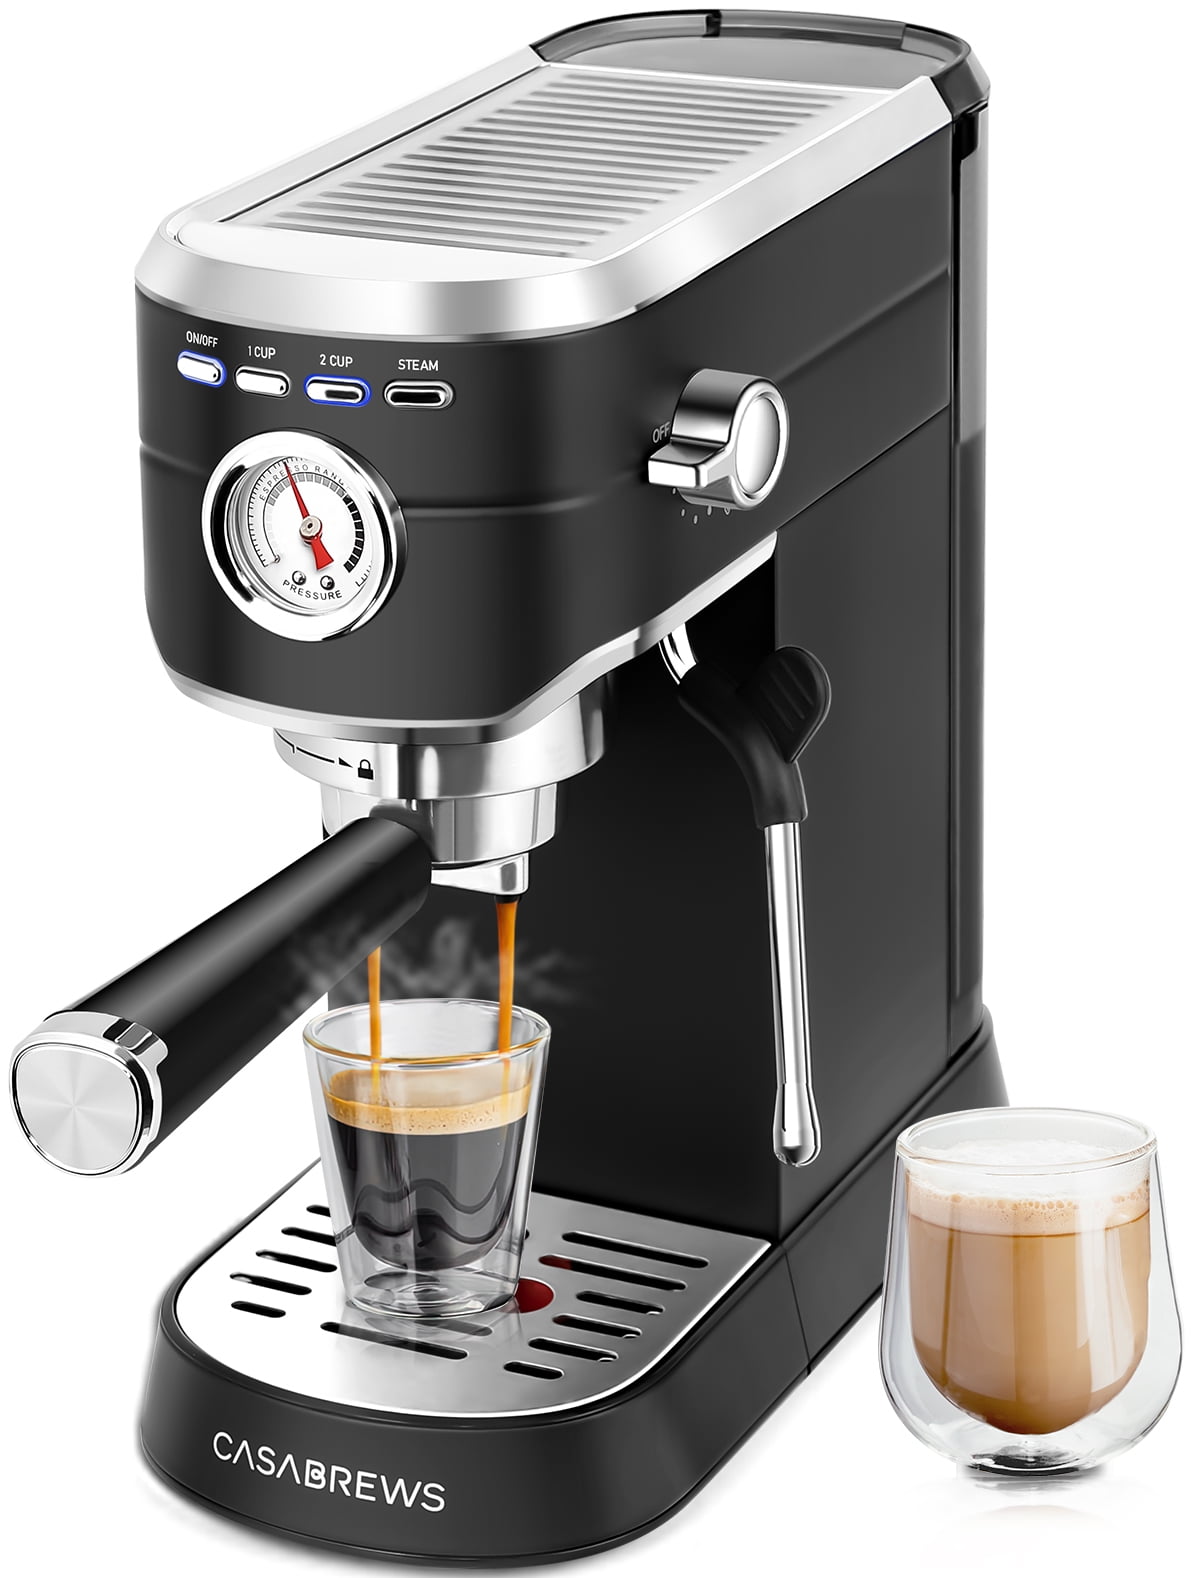 Casabrews 20 Bar Espresso Machine with Milk Frother Steam Wand ...